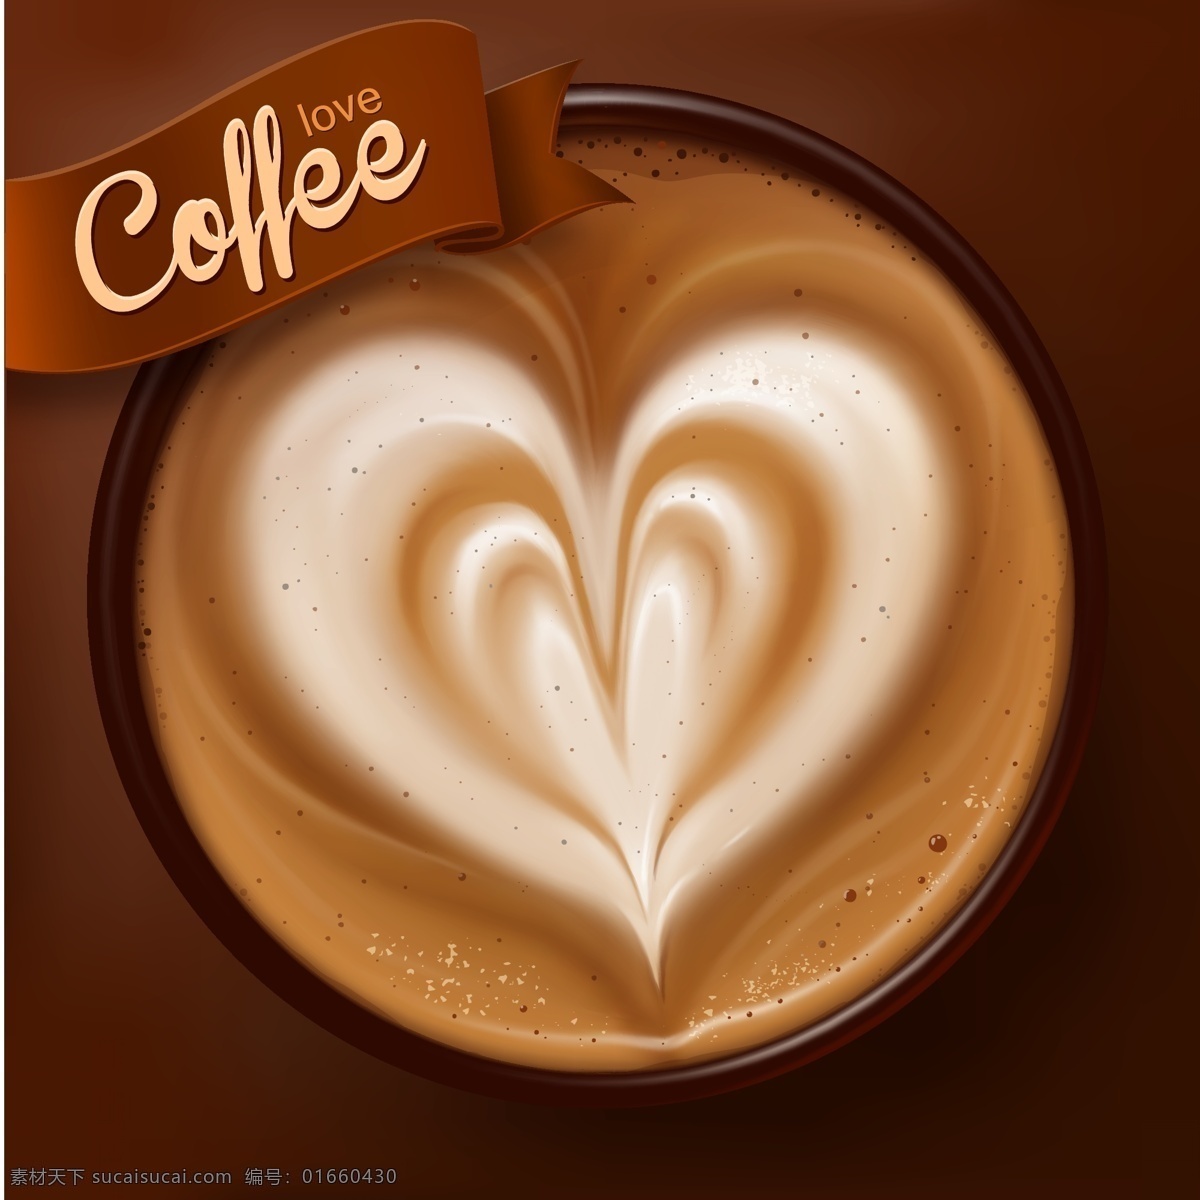 咖啡图片 咖啡 心形咖啡 爱心咖啡 卡普奇诺 矢量咖啡 手绘咖啡 咖啡插画 卡通咖啡 咖啡奶茶 创意咖啡 咖啡拉花 咖啡英文 飘带 咖啡杯 甜品 美味咖啡 饮品 食物 生活百科 餐饮美食